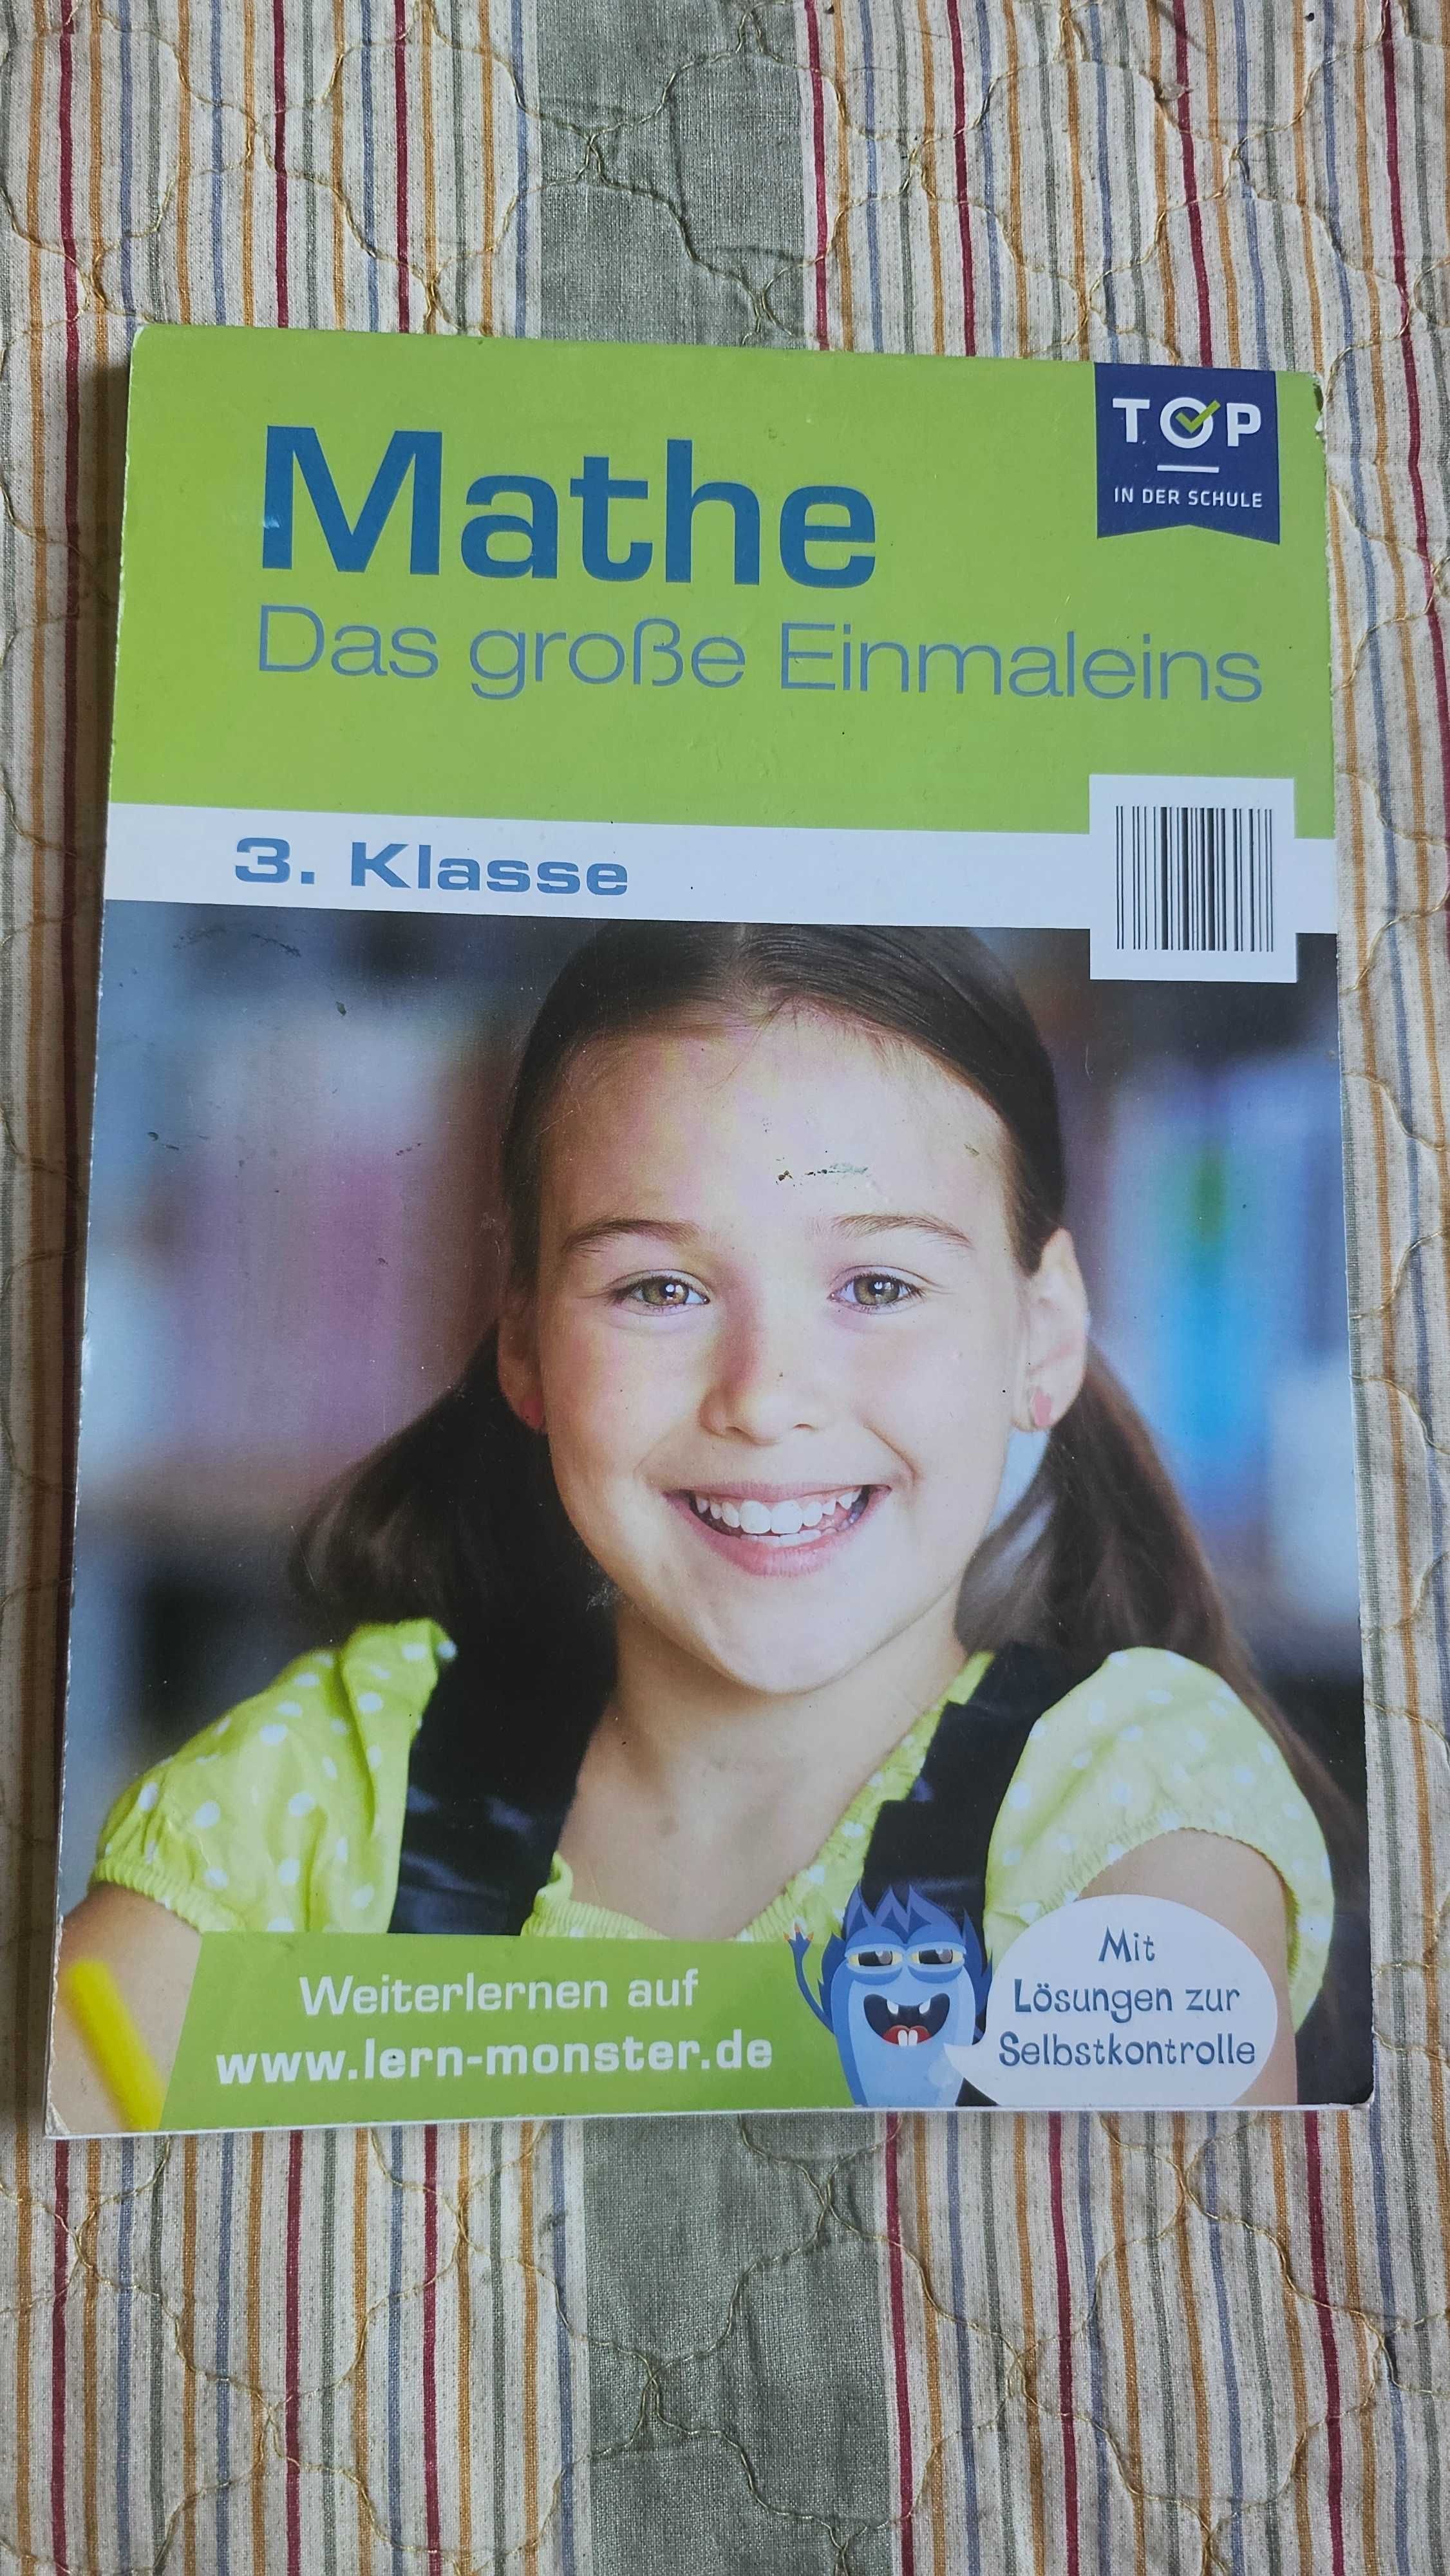 A2 Mathe Das grosse Einmaleins 3. Klasse podręcznik matematyka po niem